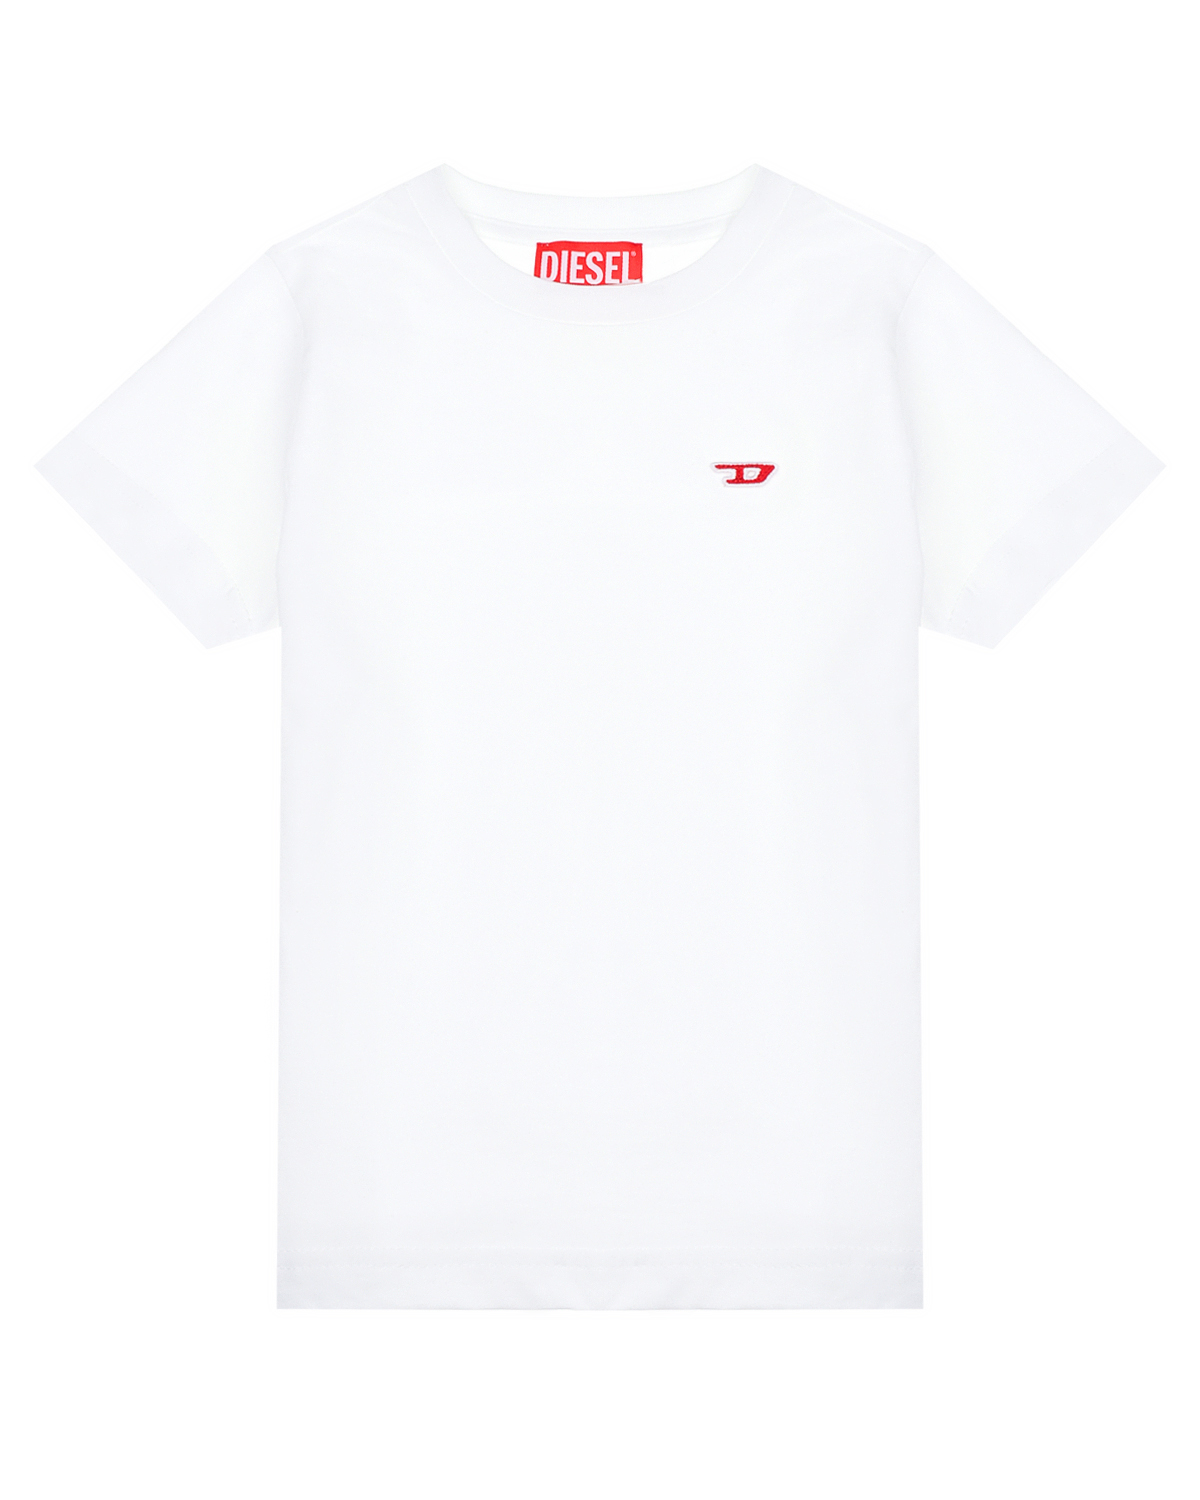 Белая футболка с красным лого Diesel велофляга stg ed bt19 750 мл без крышки белая с красным х61864